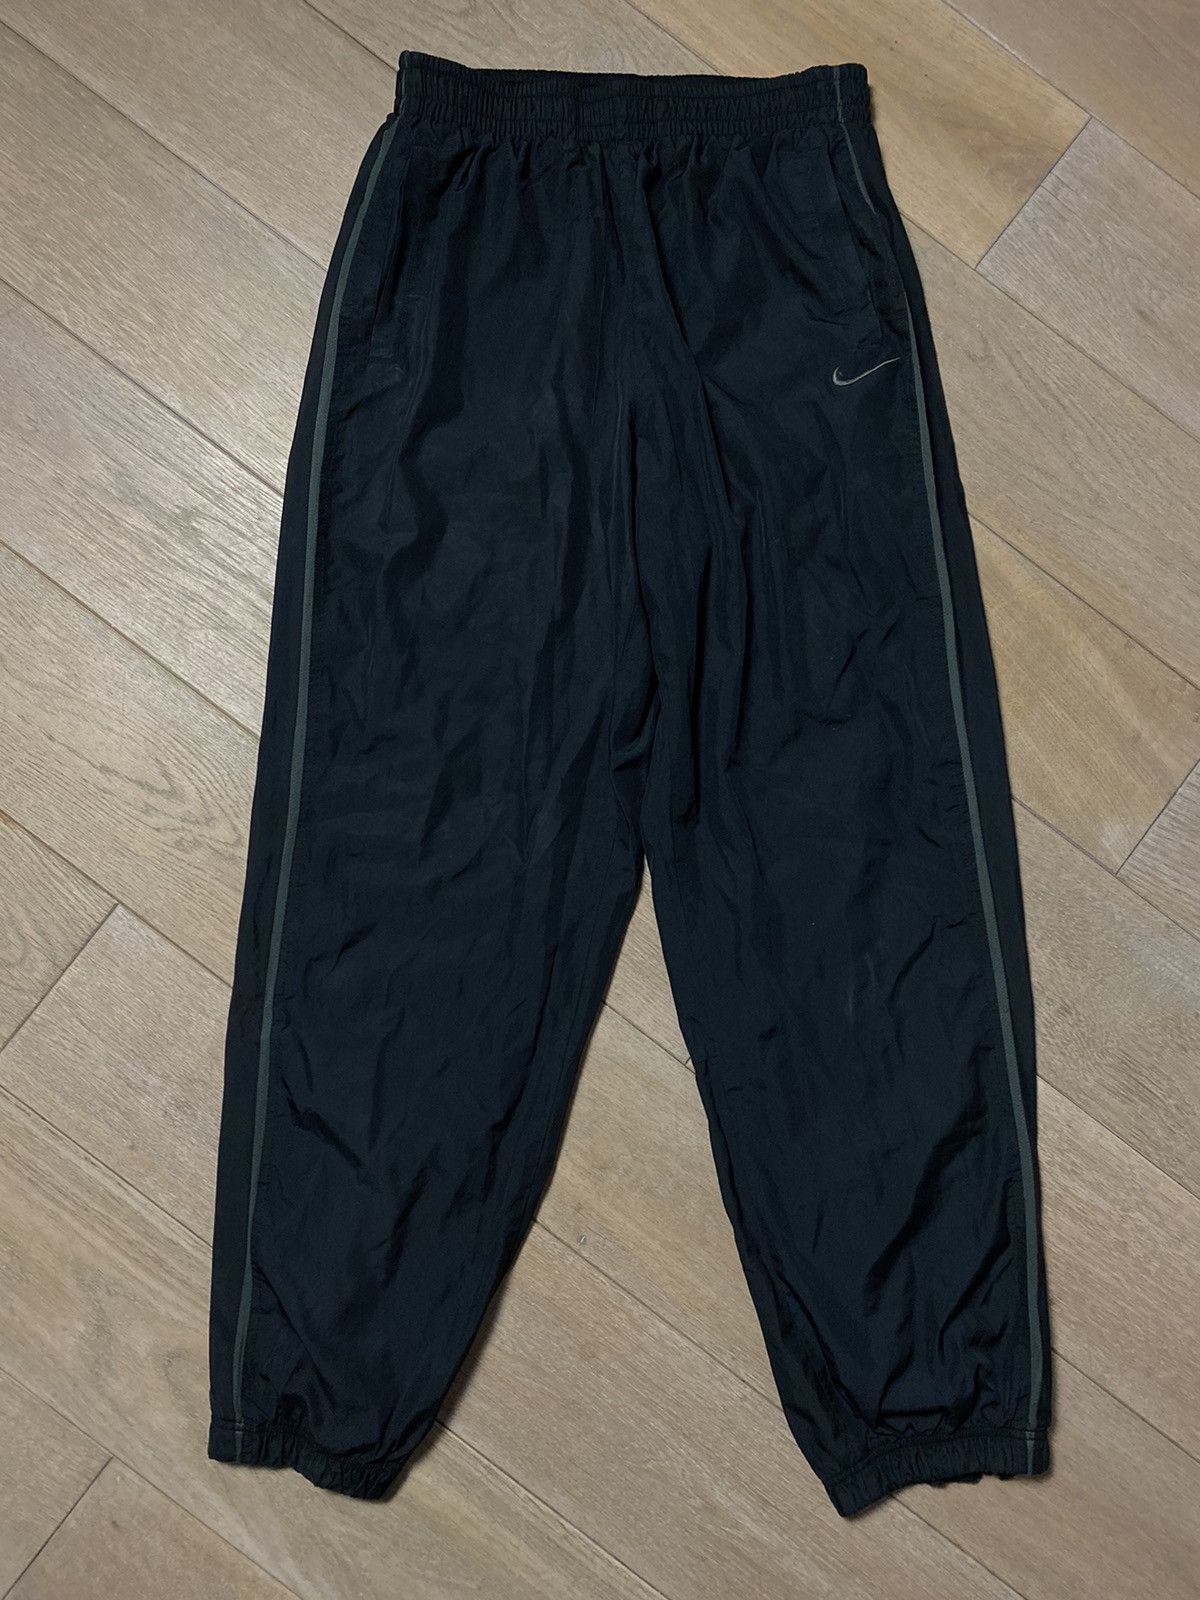 Nike vintage black track pants small swoosh parachute